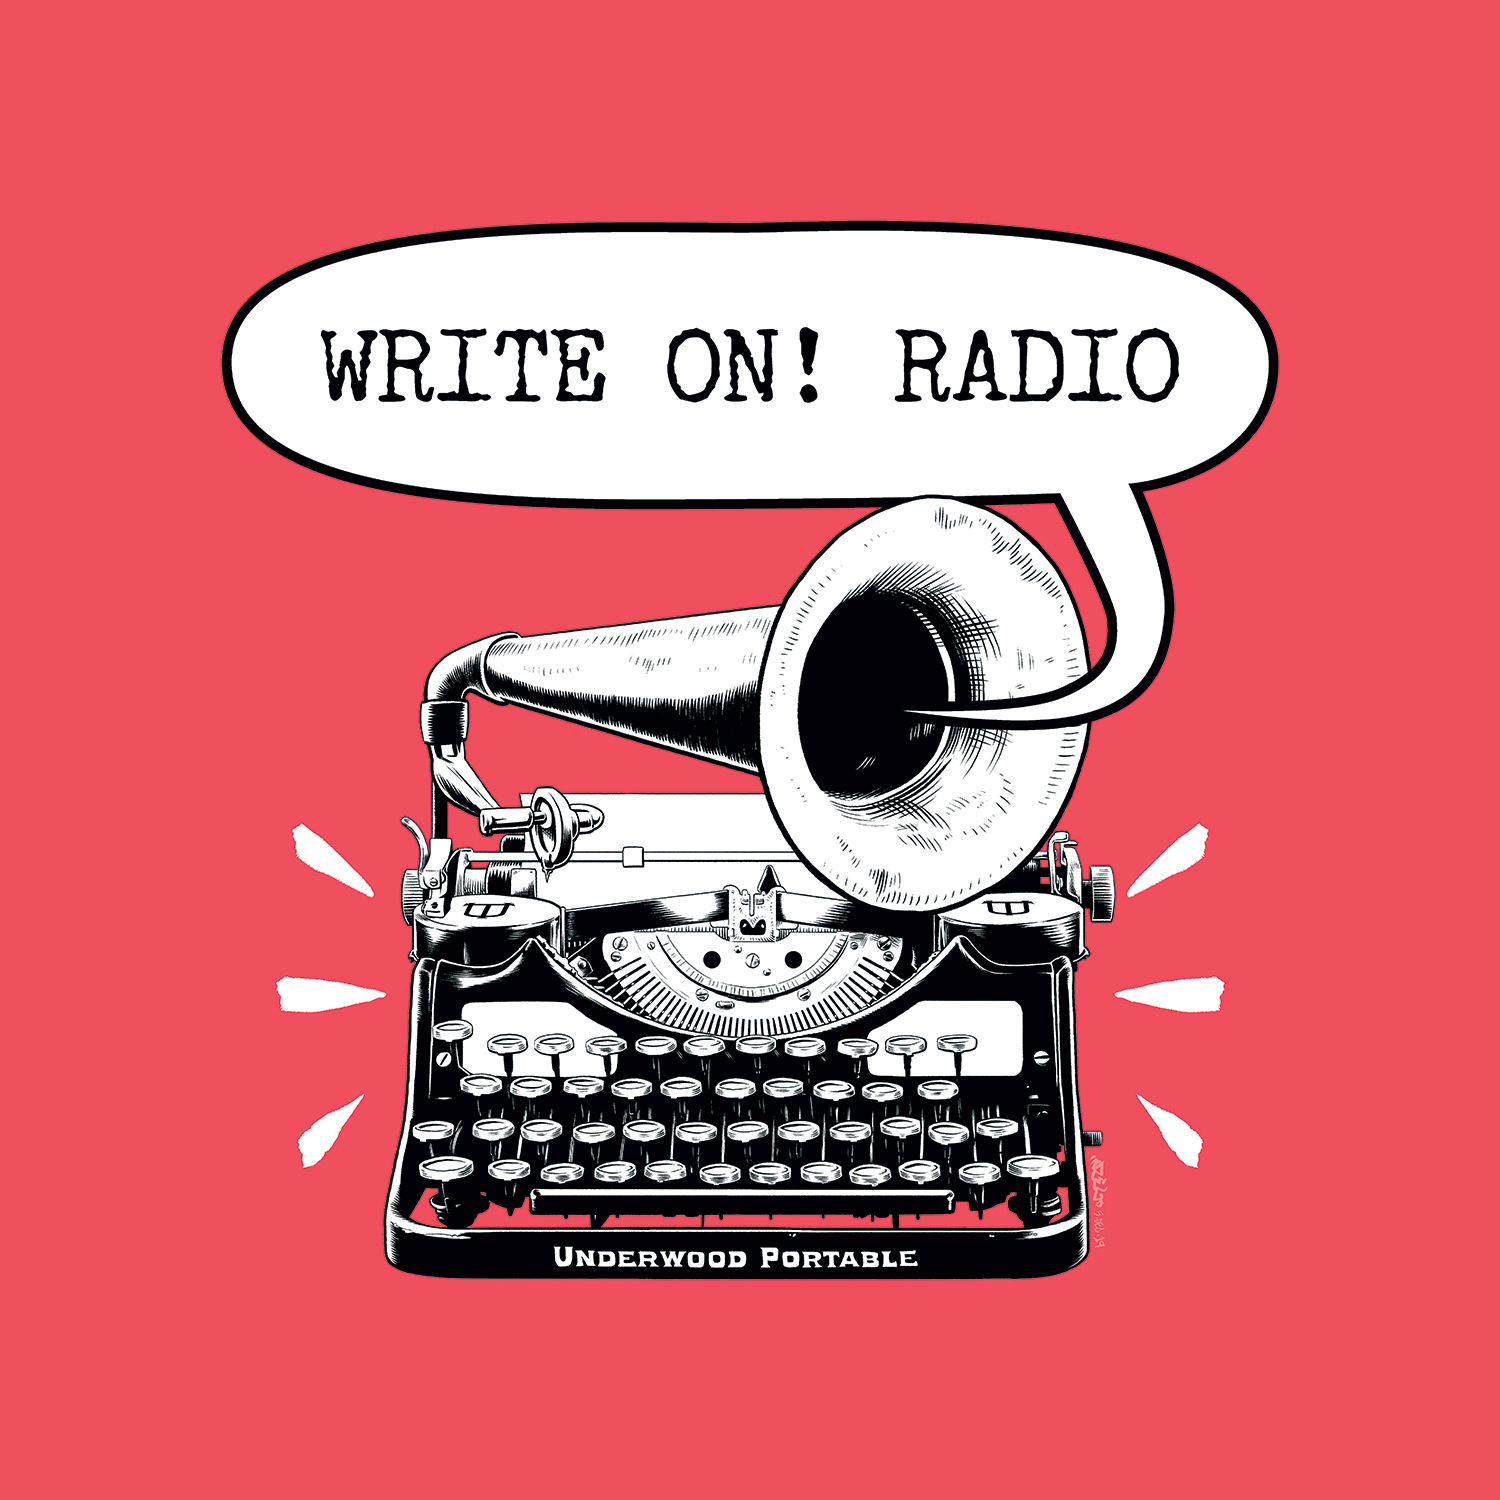 Write On! Radio